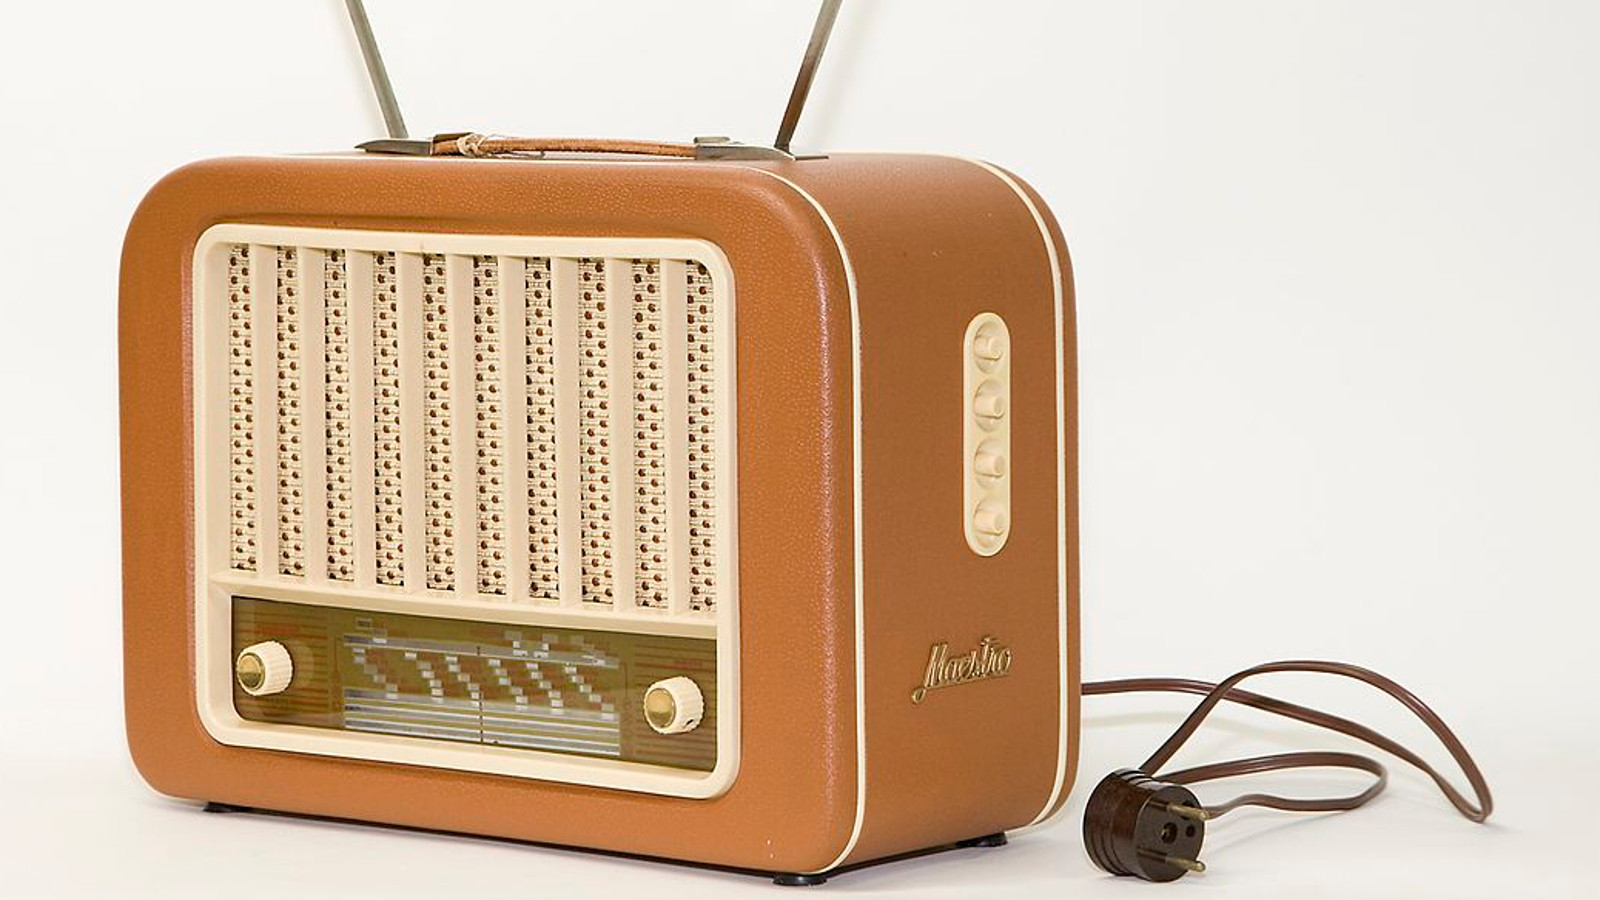 Kuvassa on vanhanaikainen hiukan kulmikas vaalean ruskea radio ja sen töpseli on irrallaan vieressä.